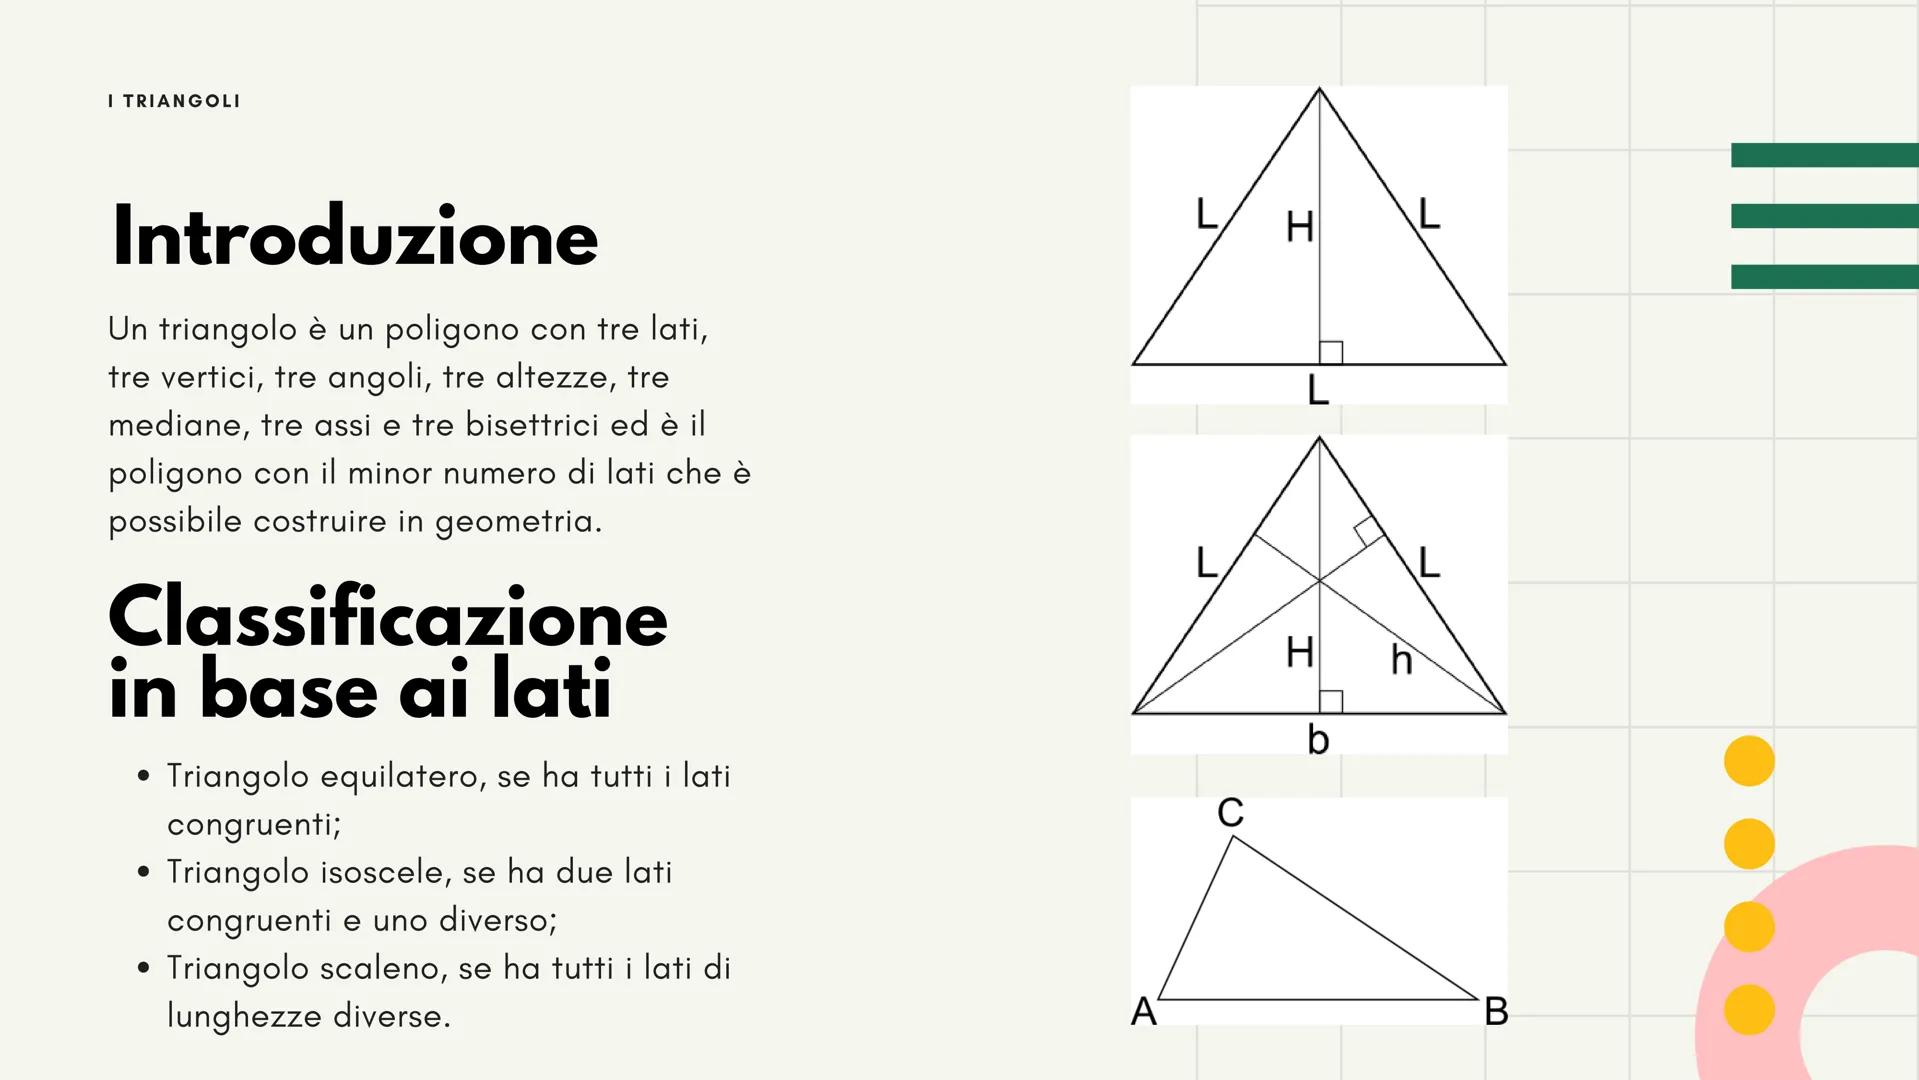 11
I triangoli
Luce Ruffato I TRIANGOLI
Introduzione
Un triangolo è un poligono con tre lati,
tre vertici, tre angoli, tre altezze, tre
medi